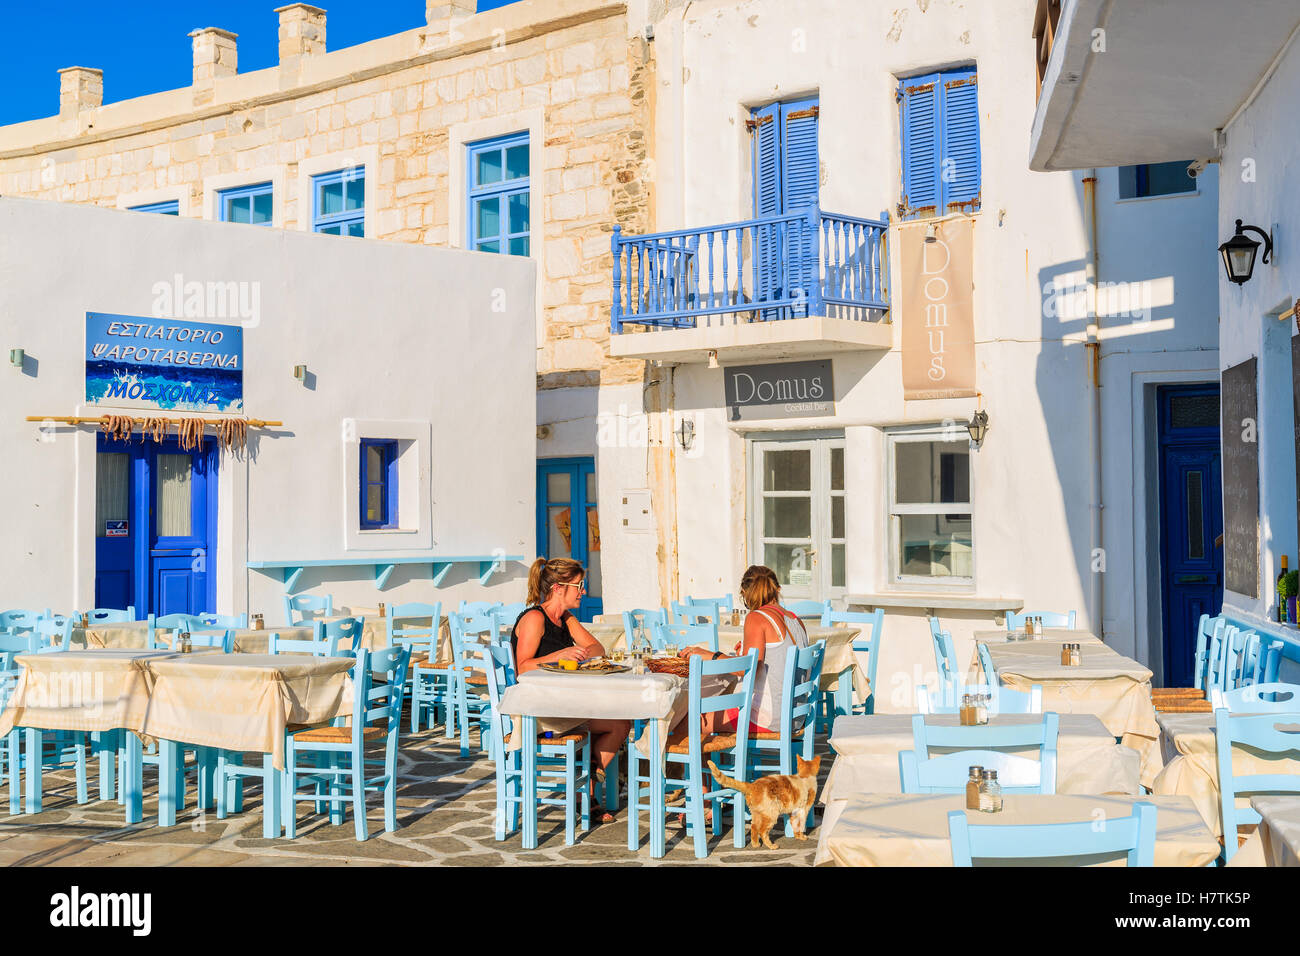 NAOUSSA Stadt, Insel PAROS - 17. Mai 2016: zwei Frauen beim Abendessen in der griechischen Taverne in Naoussa Hafen auf der Insel Paros, Griechenland. Stockfoto